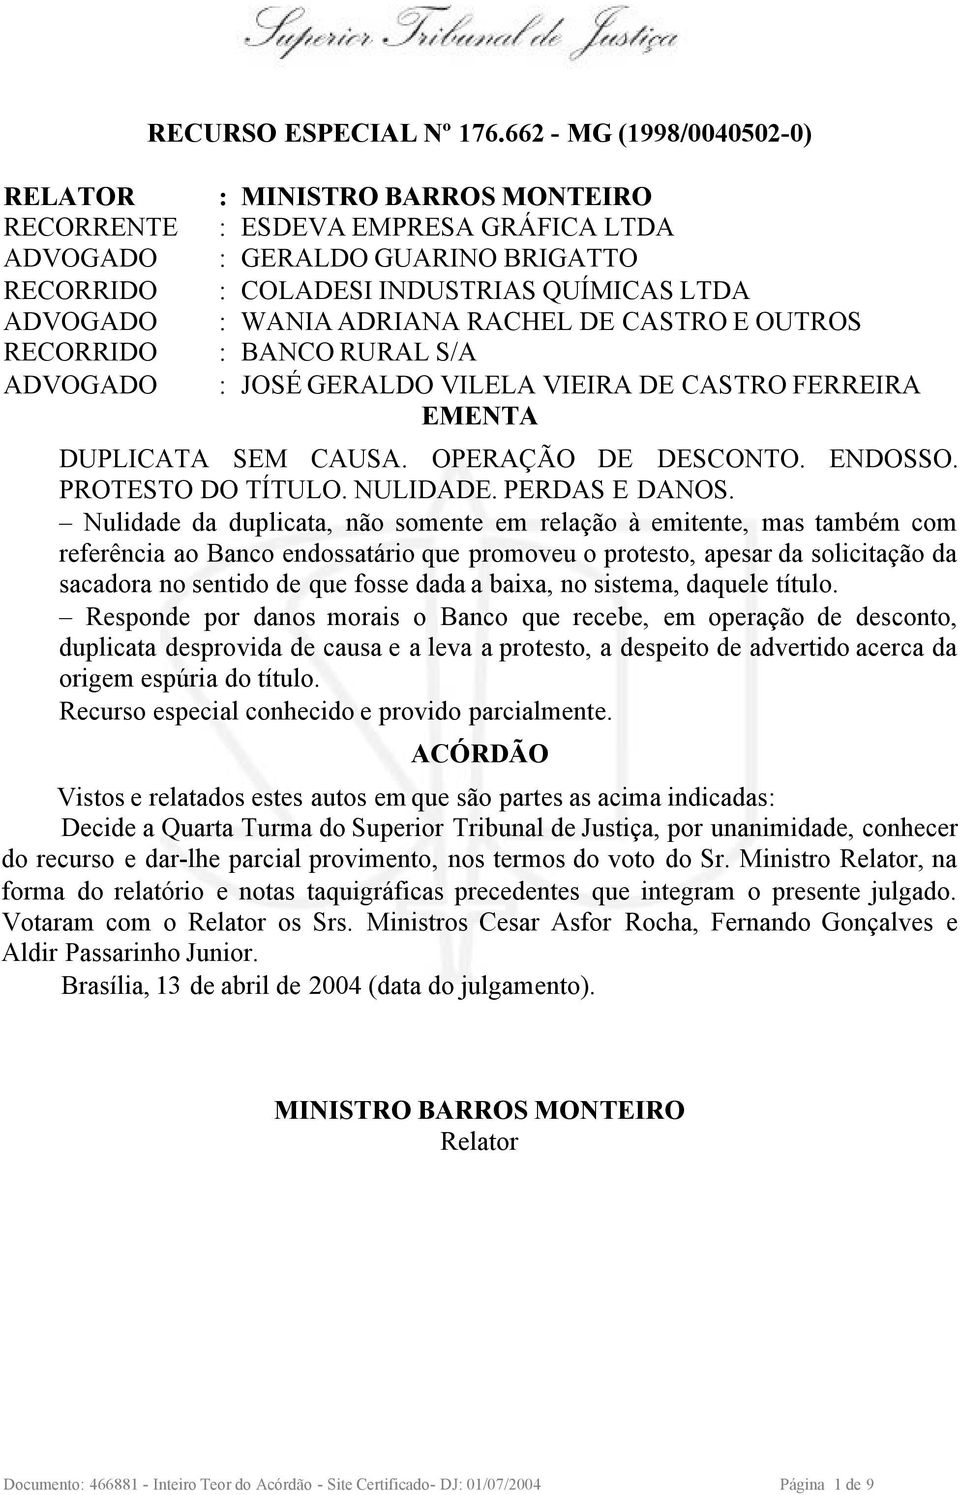 RURAL S/A : JOSÉ GERALDO VILELA VIEIRA DE CASTRO FERREIRA EMENTA DUPLICATA SEM CAUSA. OPERAÇÃO DE DESCONTO. ENDOSSO. PROTESTO DO TÍTULO. NULIDADE. PERDAS E DANOS.